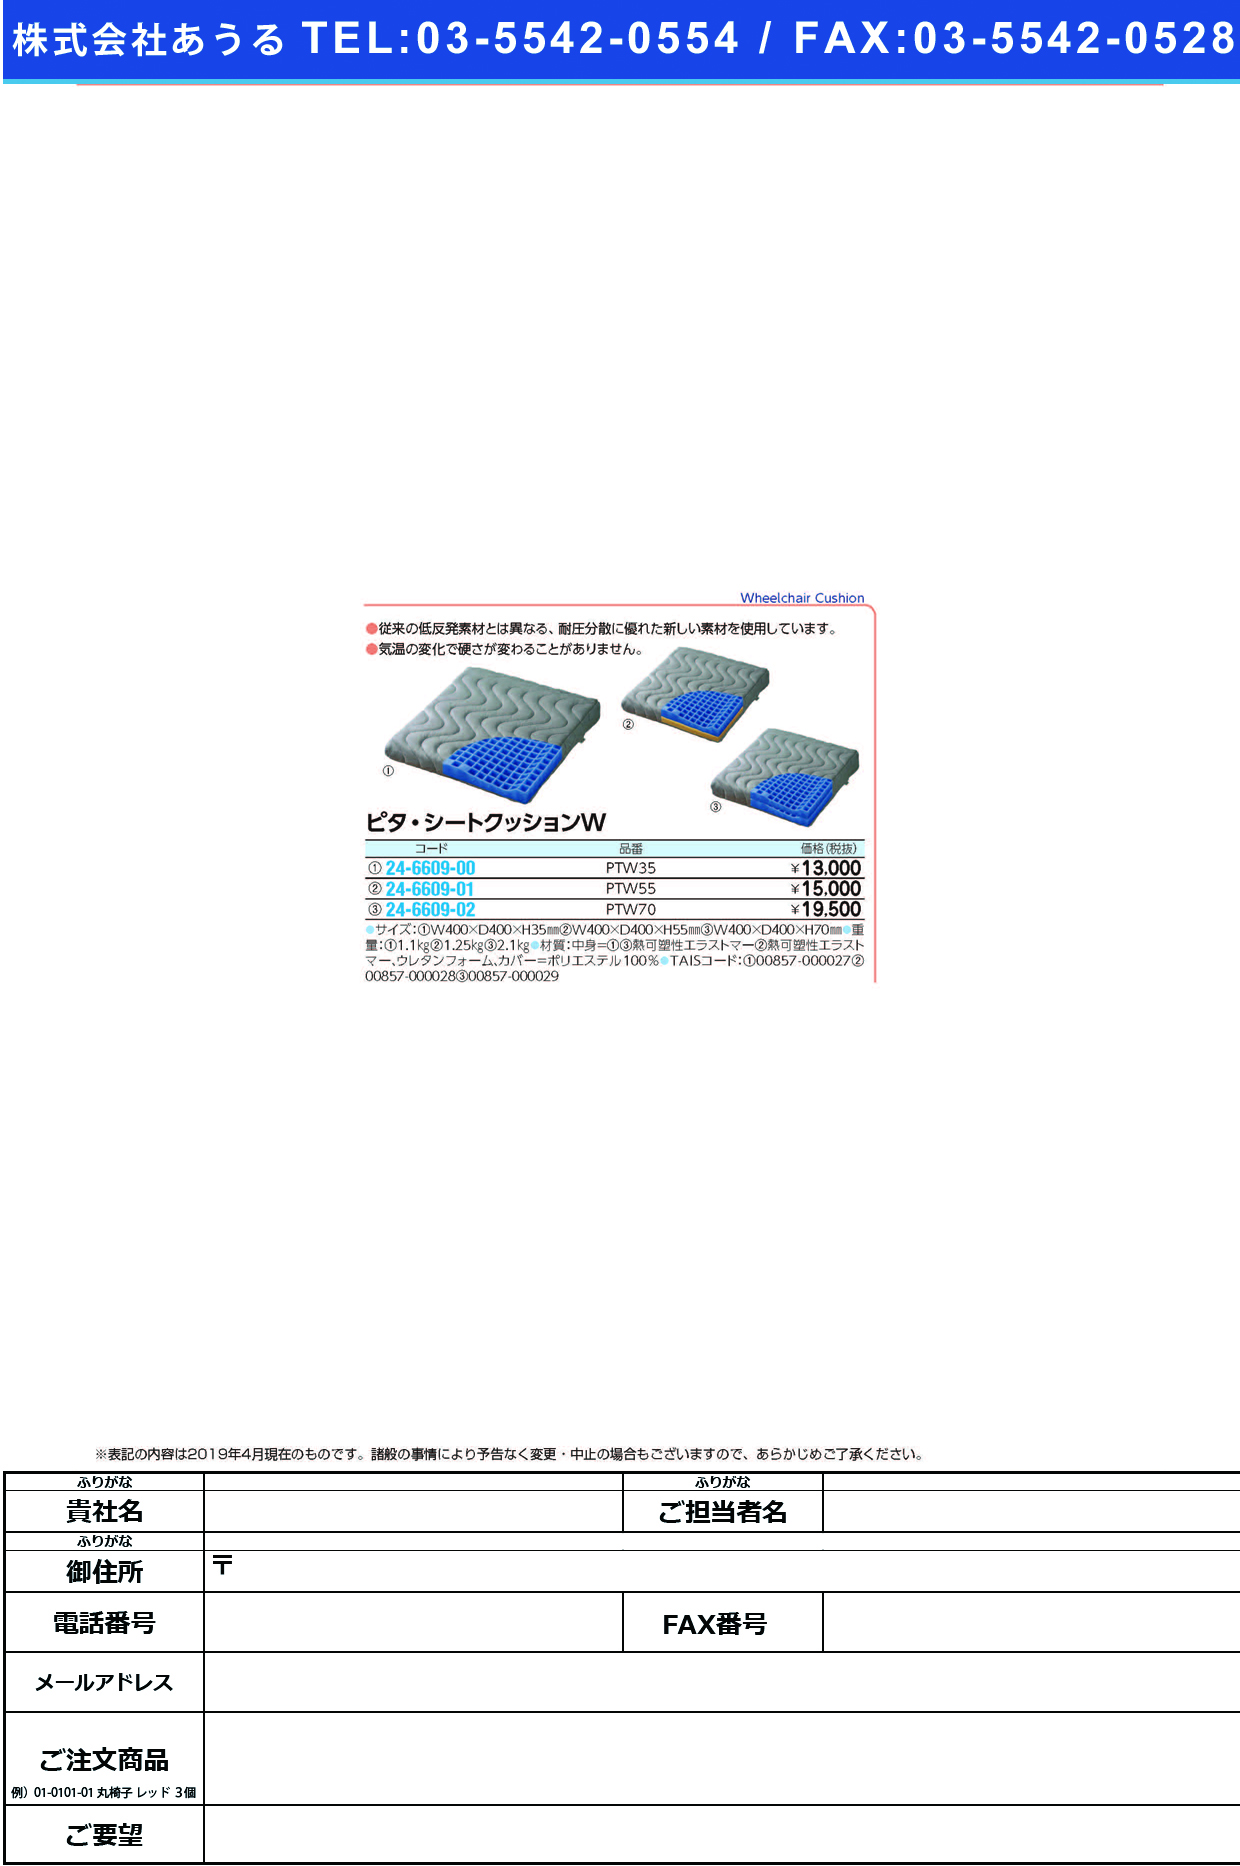 (24-6609-00)ピタ・シートクッションＷ PTW35(400X400X35MM) ﾋﾟﾀｼｰﾄｸｯｼｮﾝW(日本エンゼル)【1枚単位】【2019年カタログ商品】